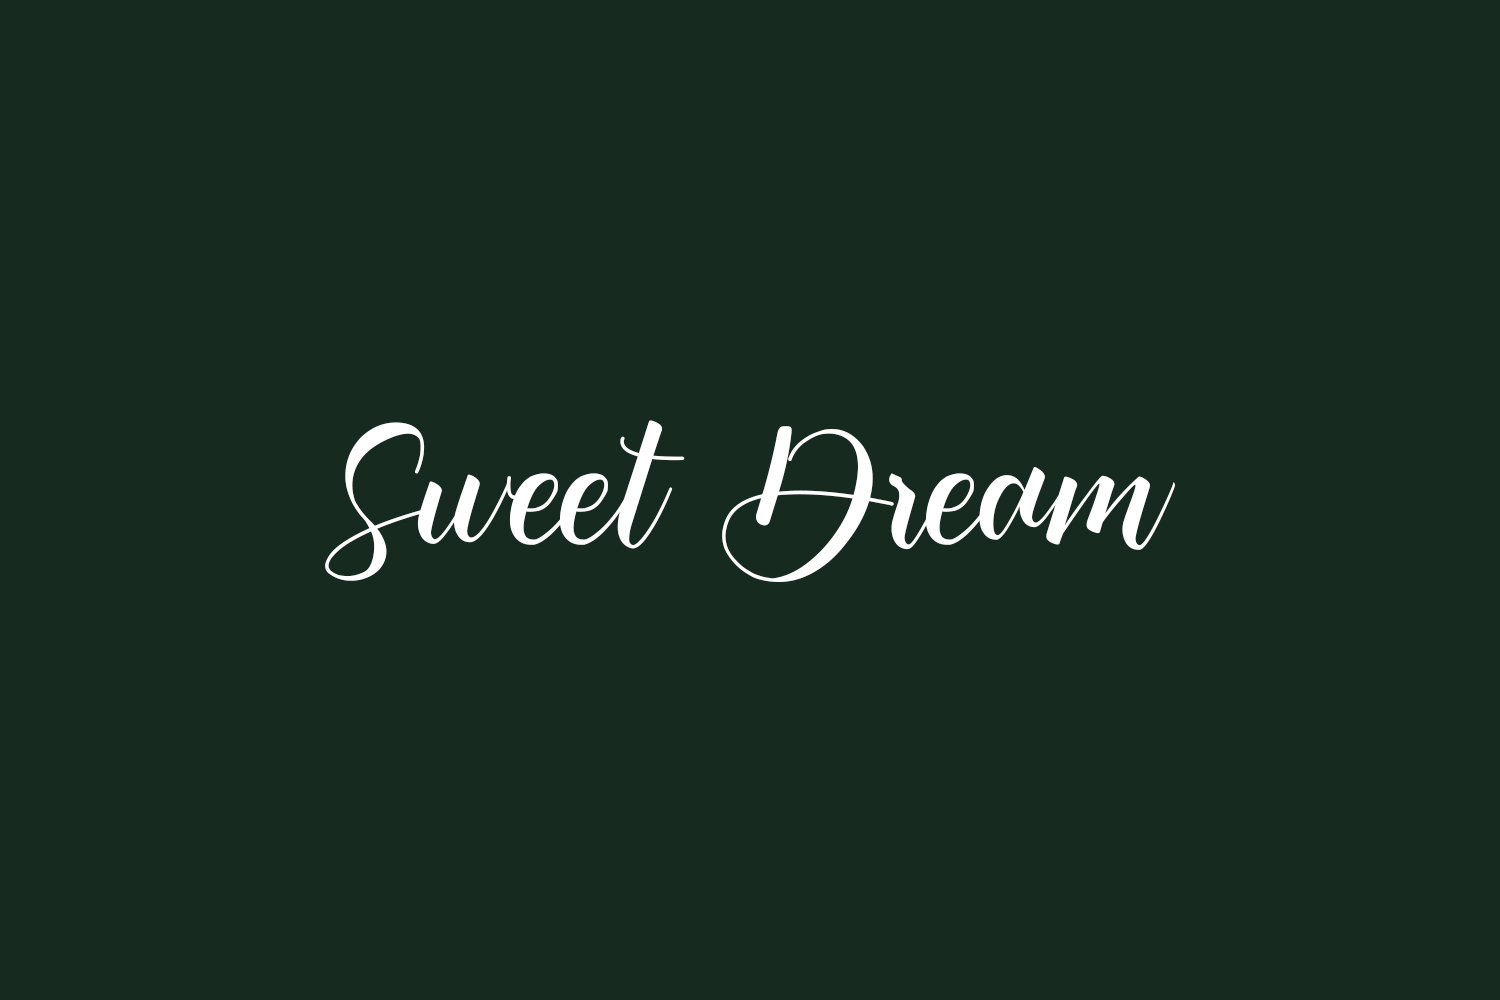 Sweet Dream Free Font